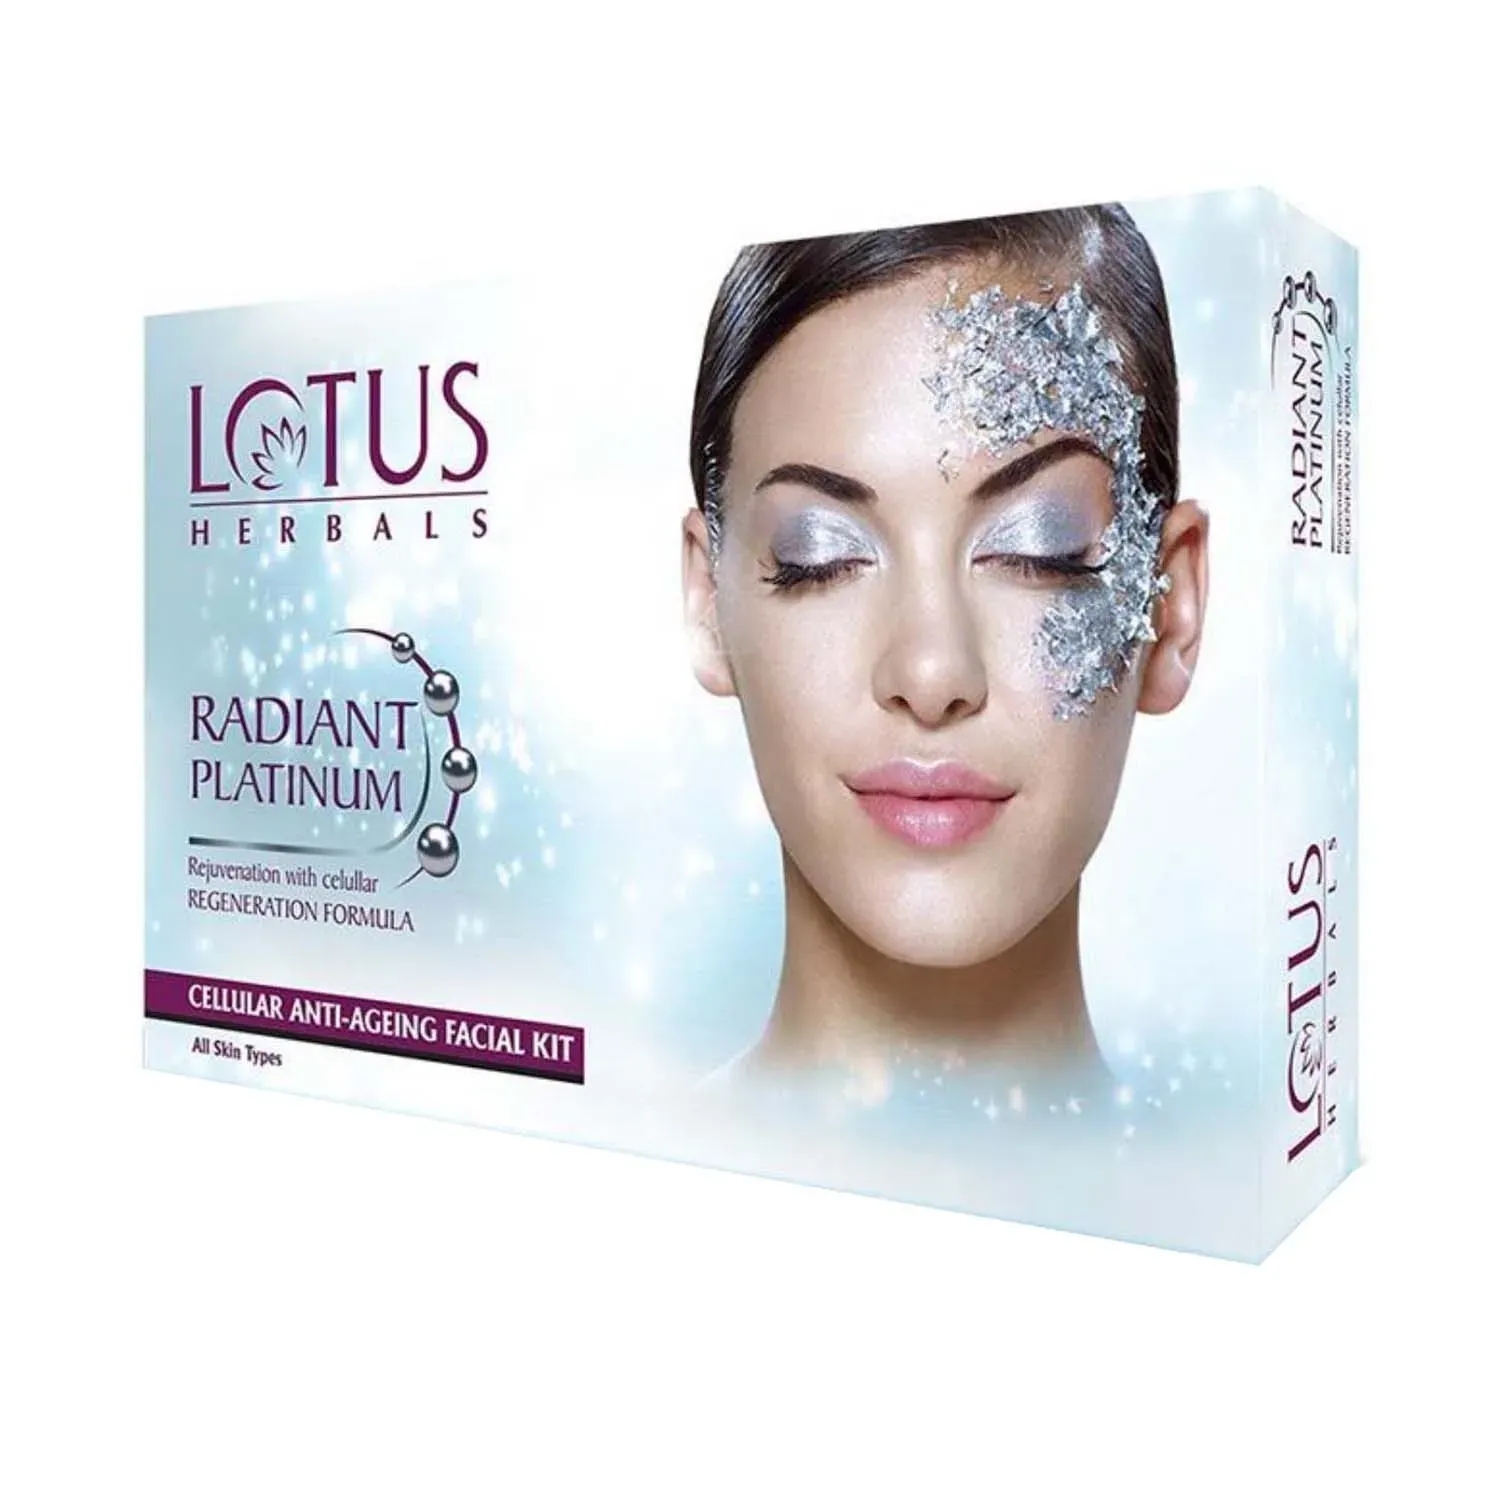 Lotus | Lotus Herbals Radiant Platinum Cellular Anti-Ageing 1 Facial Kit - (37g)